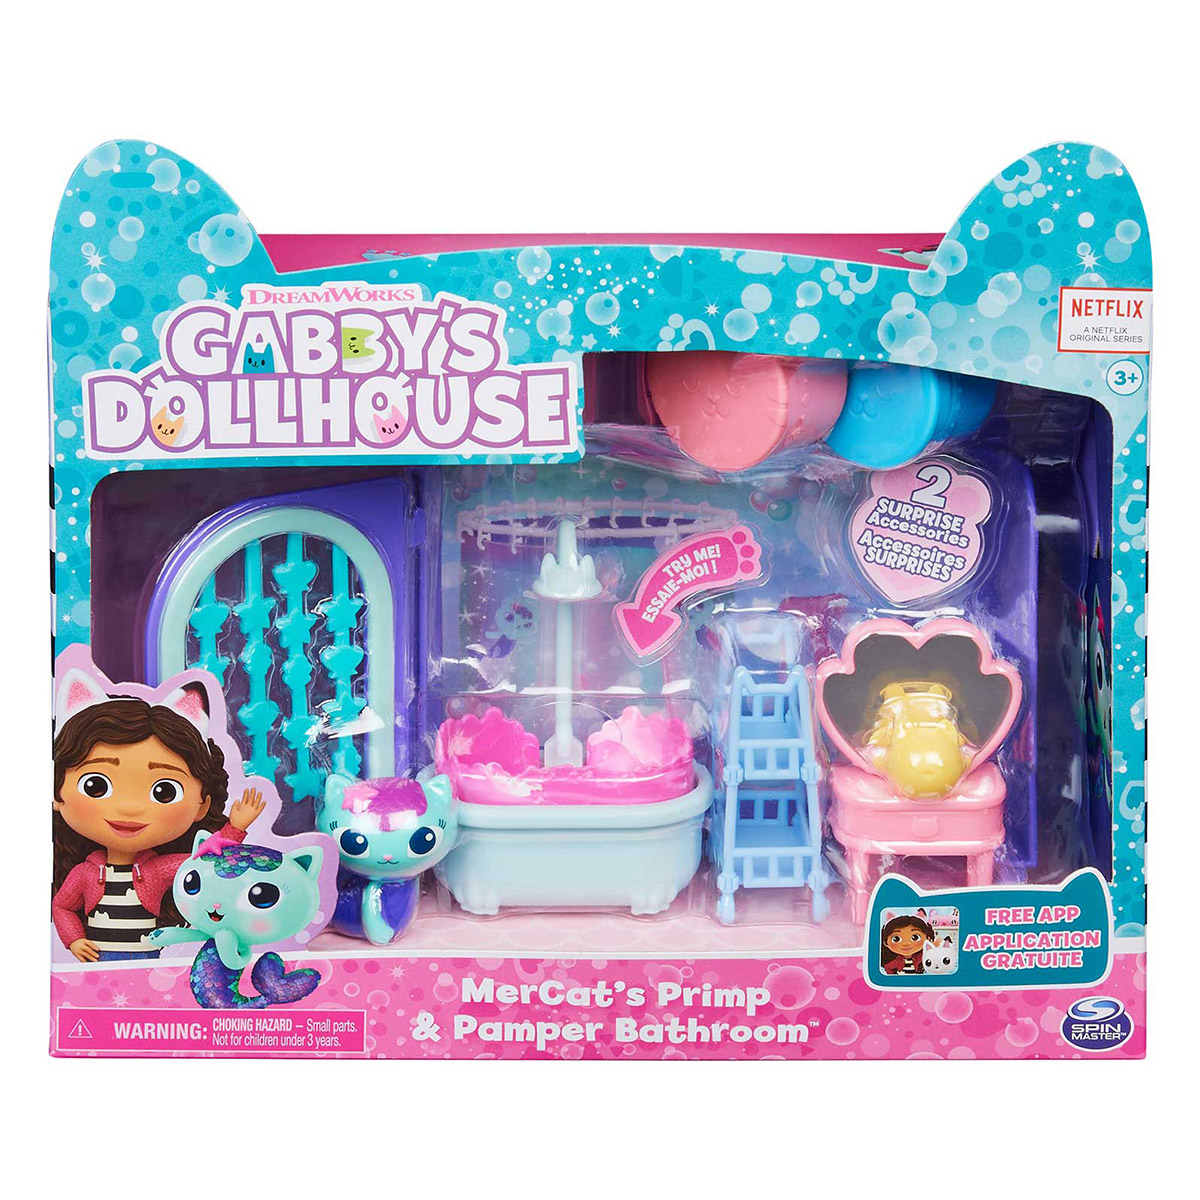 Jogo Casa de Bonecas Gabby's Dollhouse